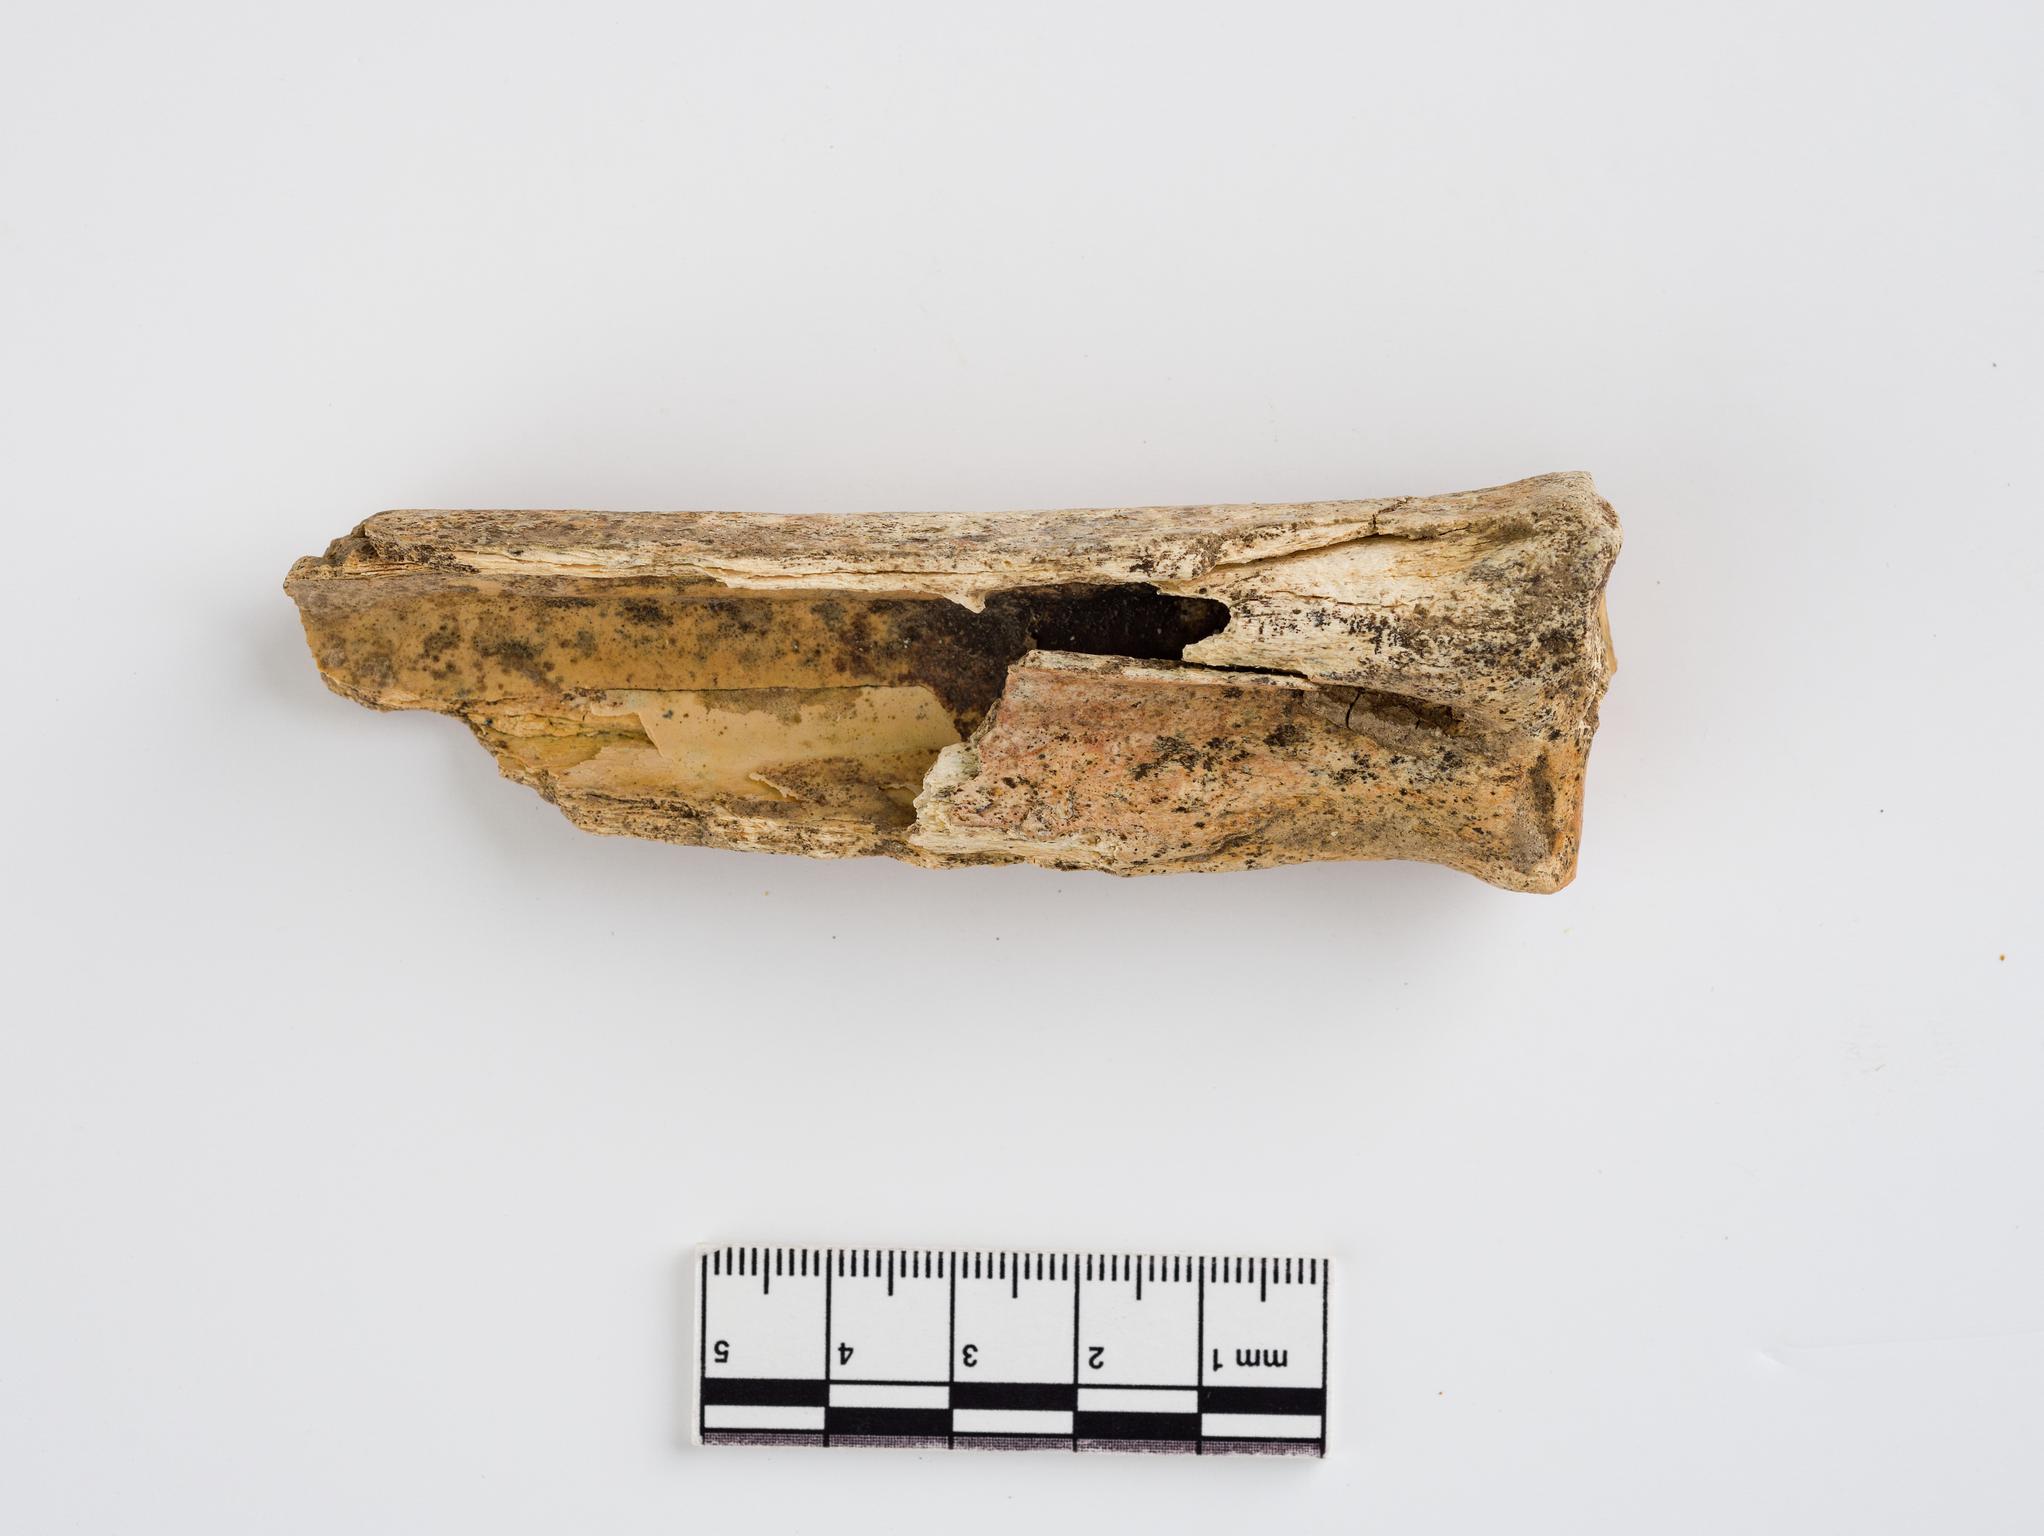 Pleistocene reindeer bone